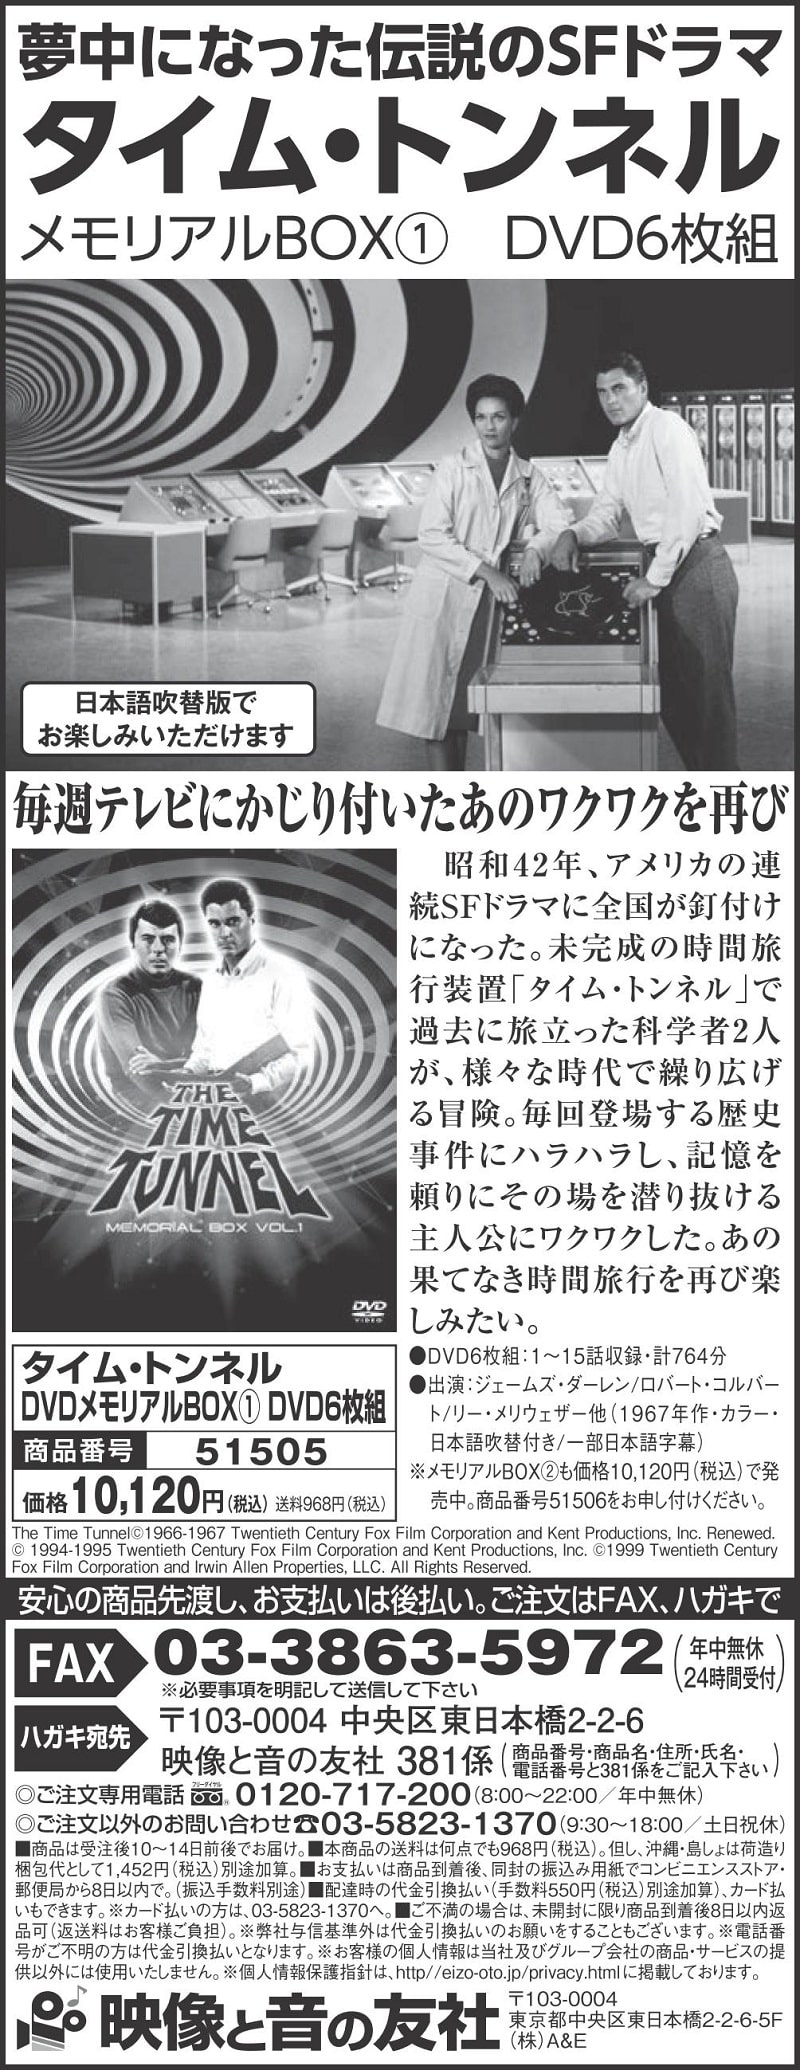 タイム・トンネル DVDコレクターズBOX Vol.1 DVD 6枚組【５０６pt 